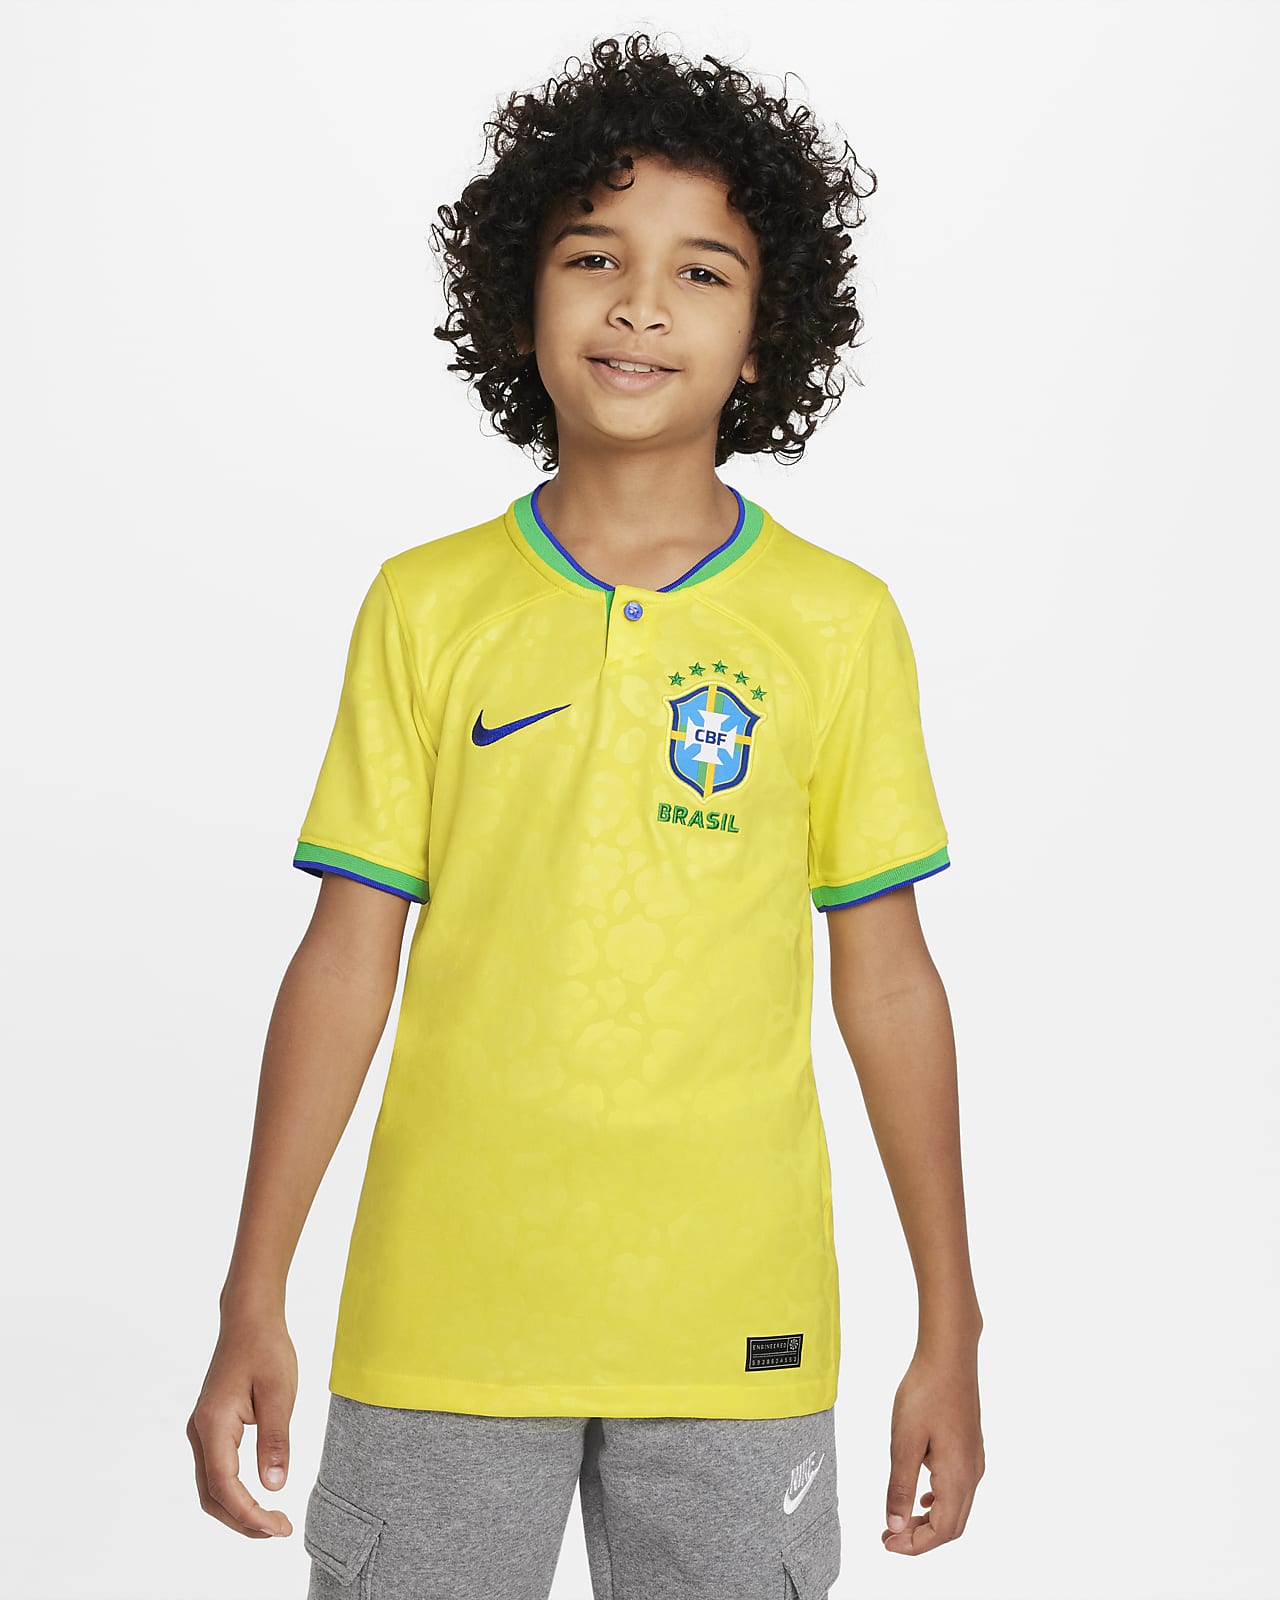 Ποδοσφαιρική φανέλα Nike Dri-FIT εντός έδρας Βραζιλία 2022/23 Stadium για μεγάλα παιδιά